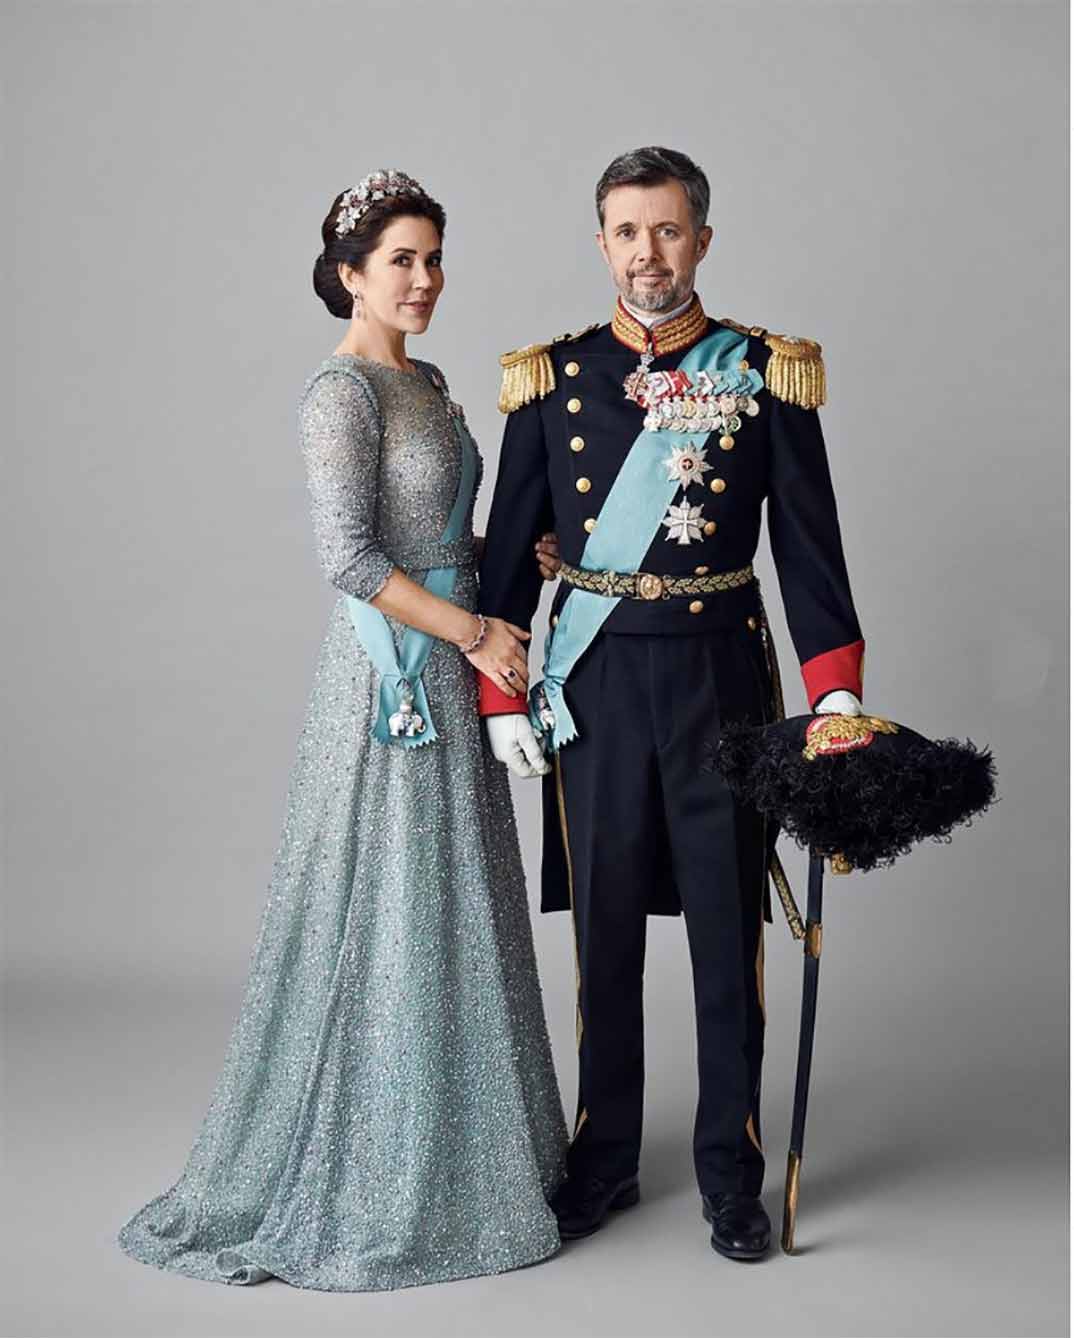 Federico y Mary de Dinamarca © Hasse Nielsen/Casa Real de Dinamarca